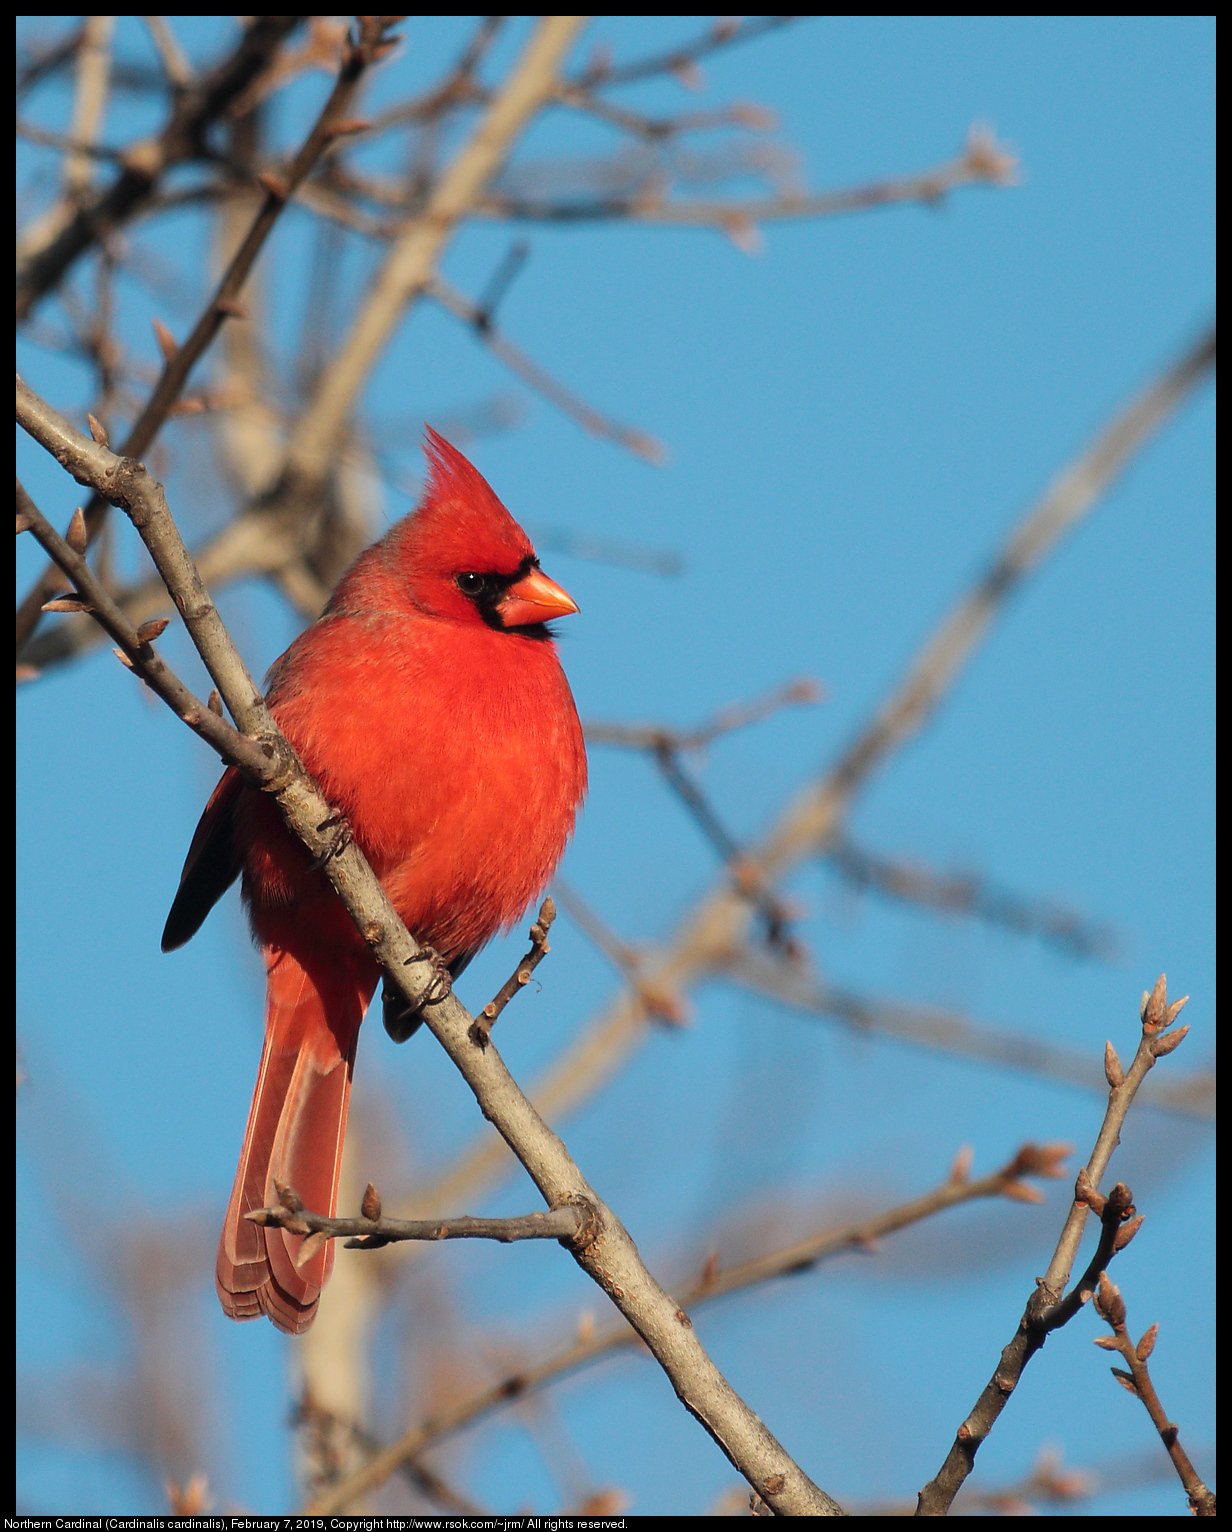 Northern Cardinal (Cardinalis cardinalis), February 7, 2019